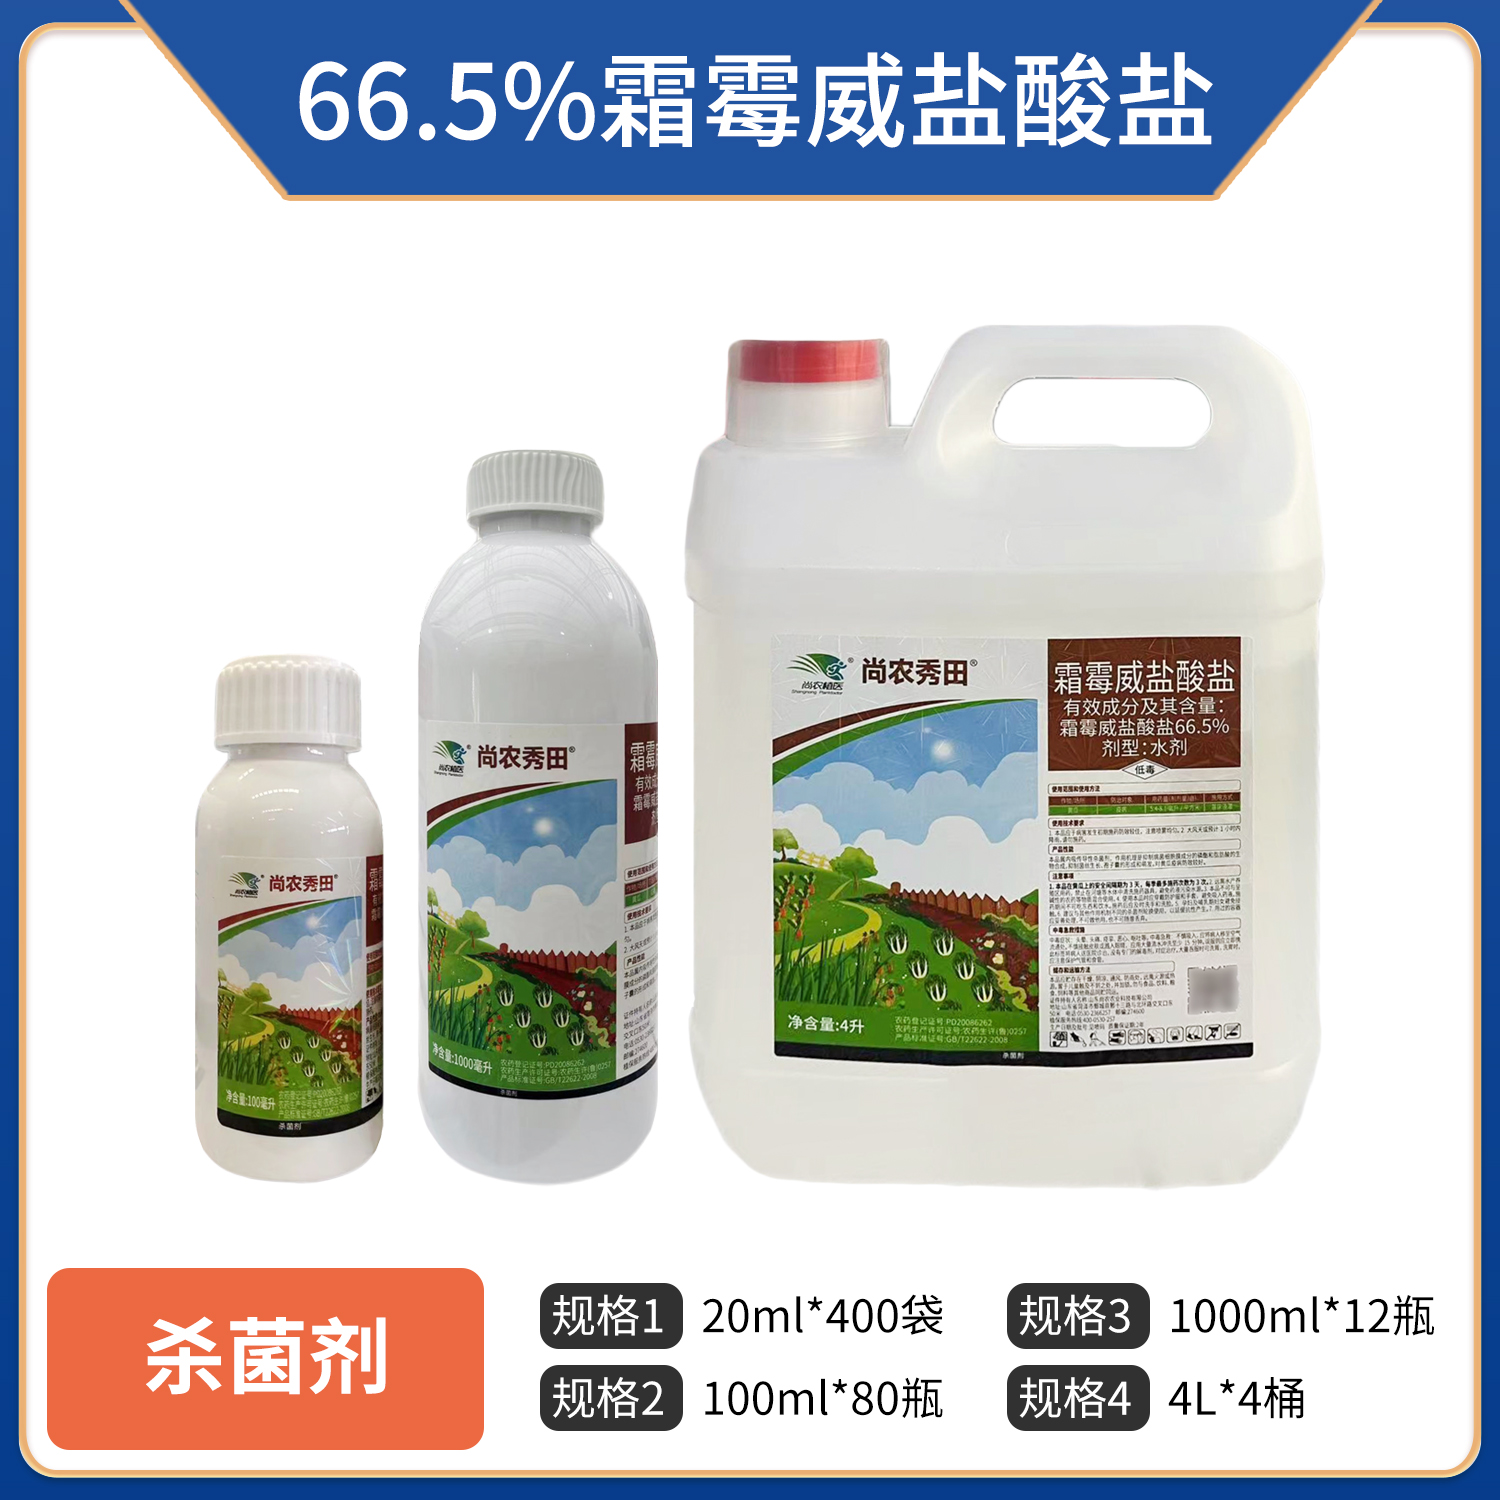 尚农秀田-66.5%霜霉威盐酸盐水剂